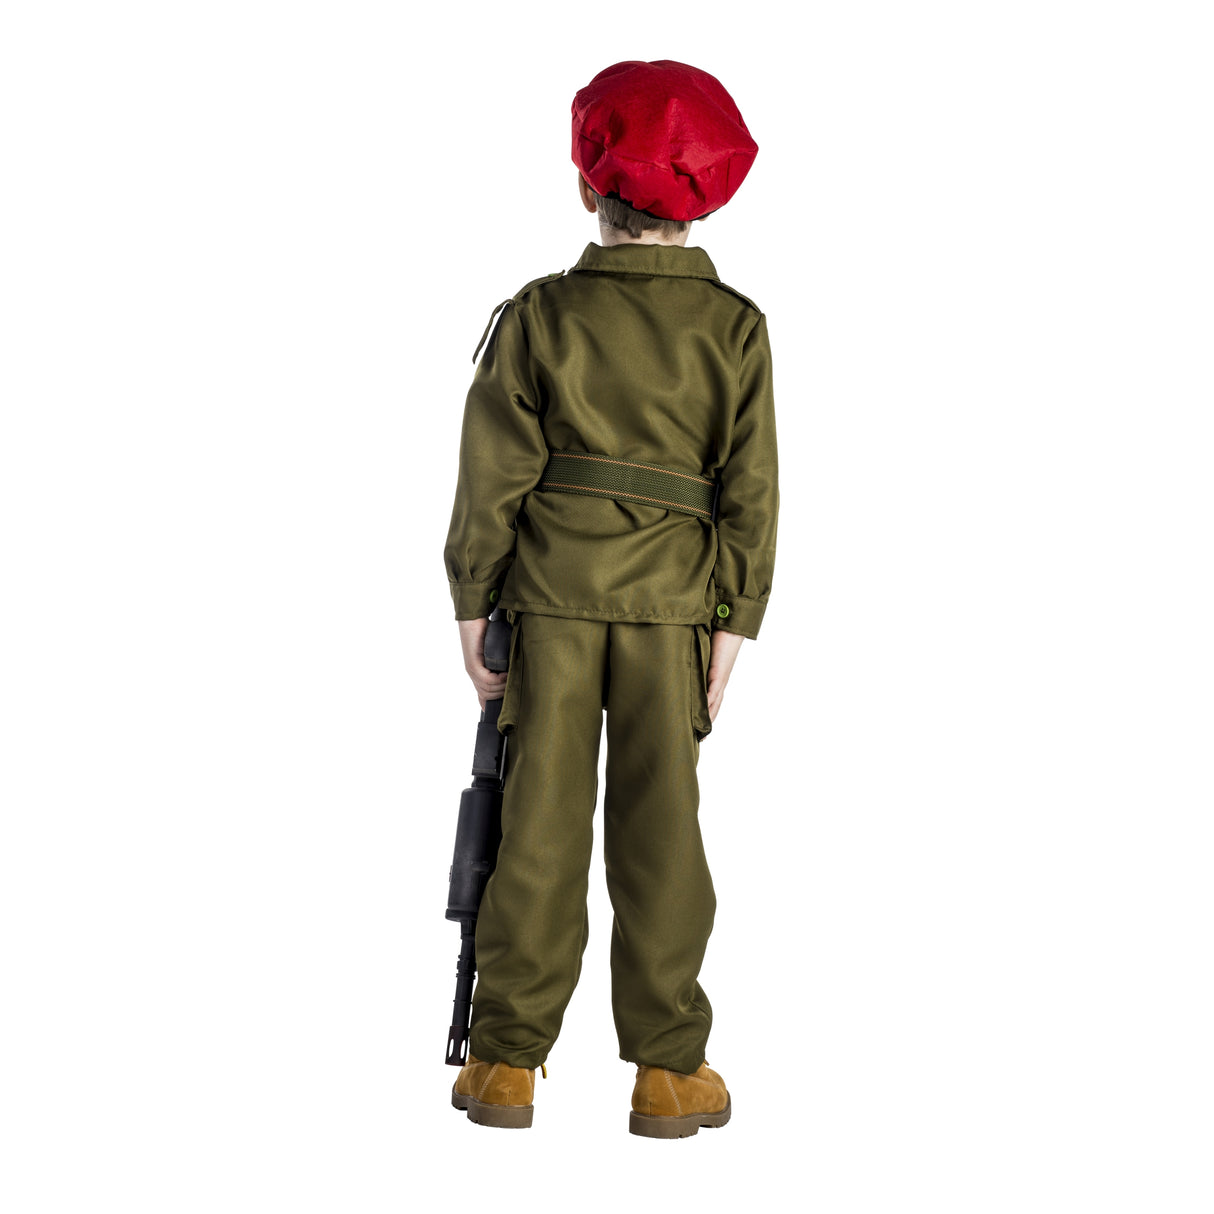 Israeli Soldier Costume - Kids